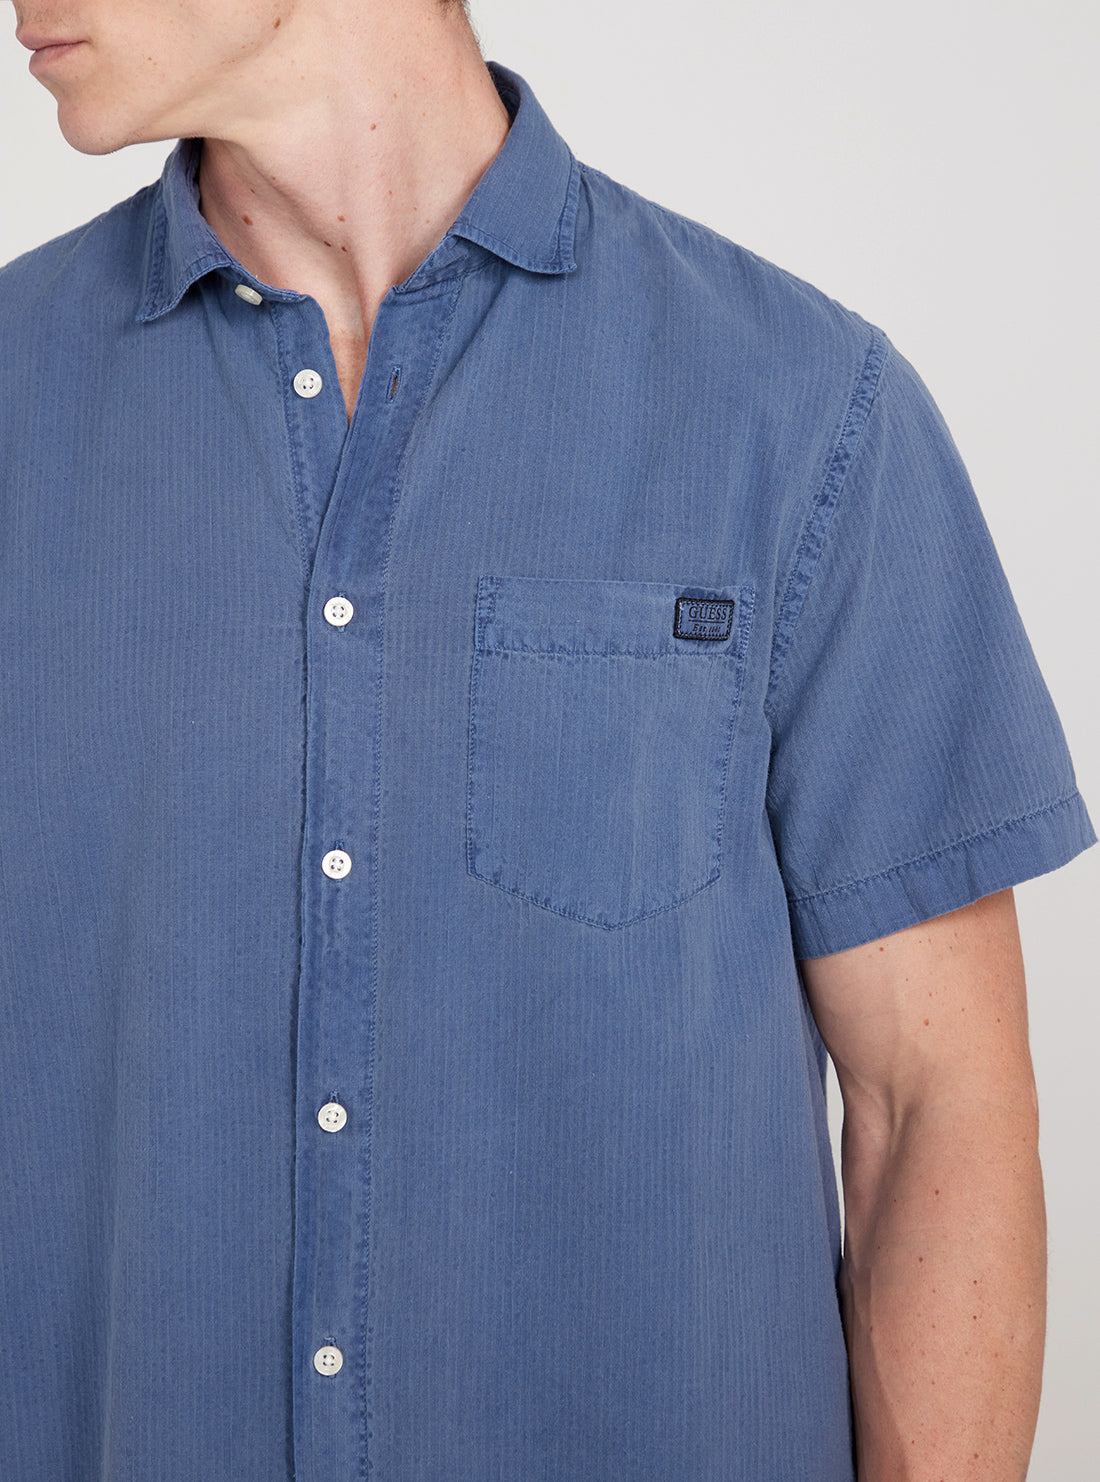 GUESS Blue Short Sleeves Collins Seersucker Shirt detail view